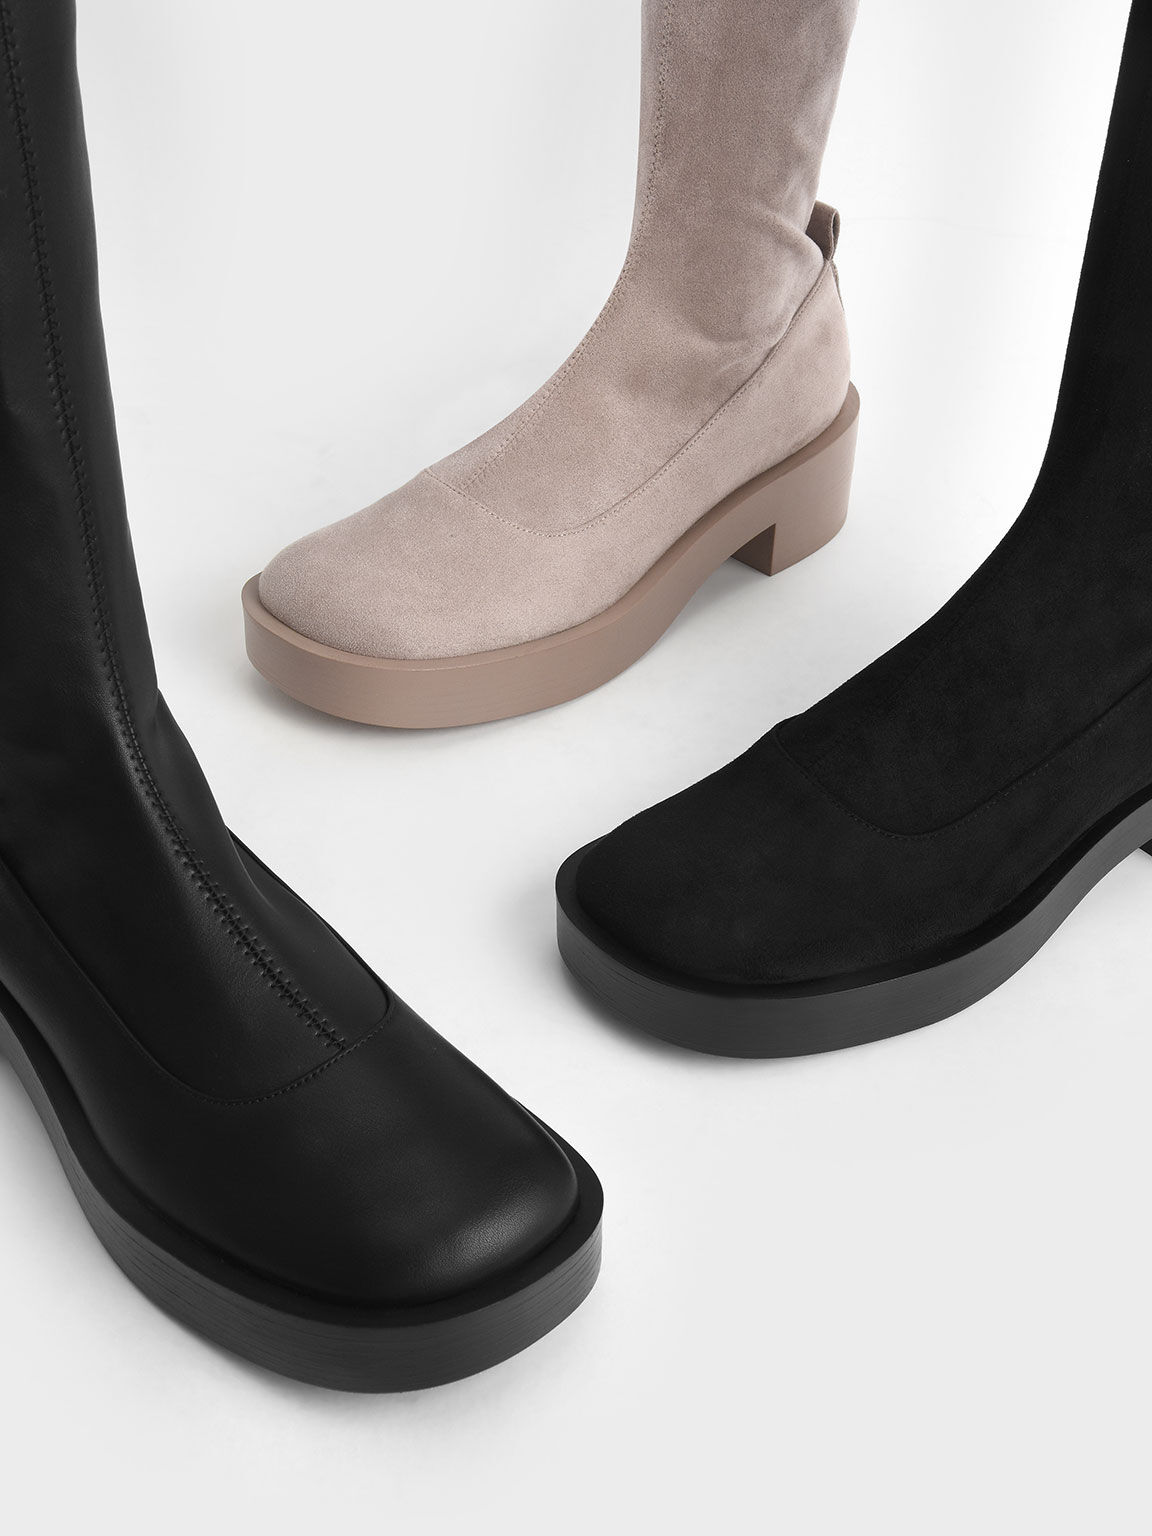 Thigh-High Block Heel Boots, Black, hi-res